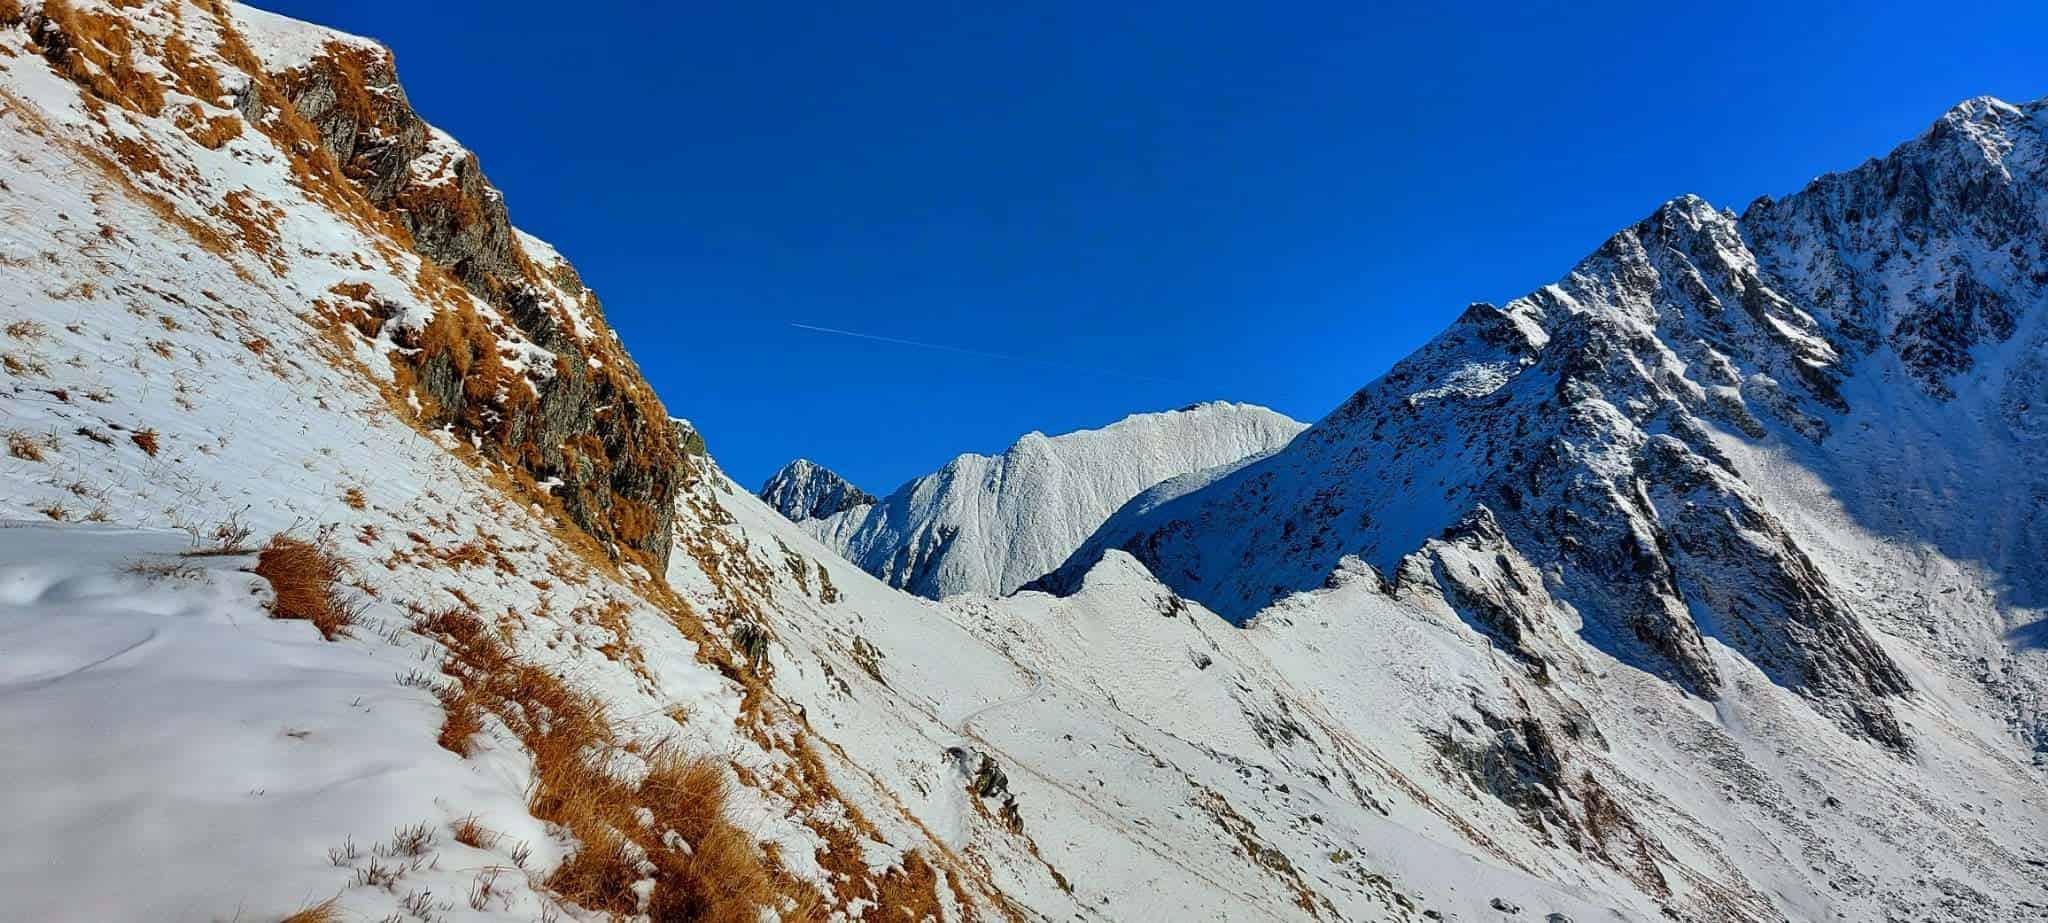 foto crestele munţilor făgăraş au fost acoperite de zăpadă - salvamont: stratul este suficient pentru a pune probleme drumeților